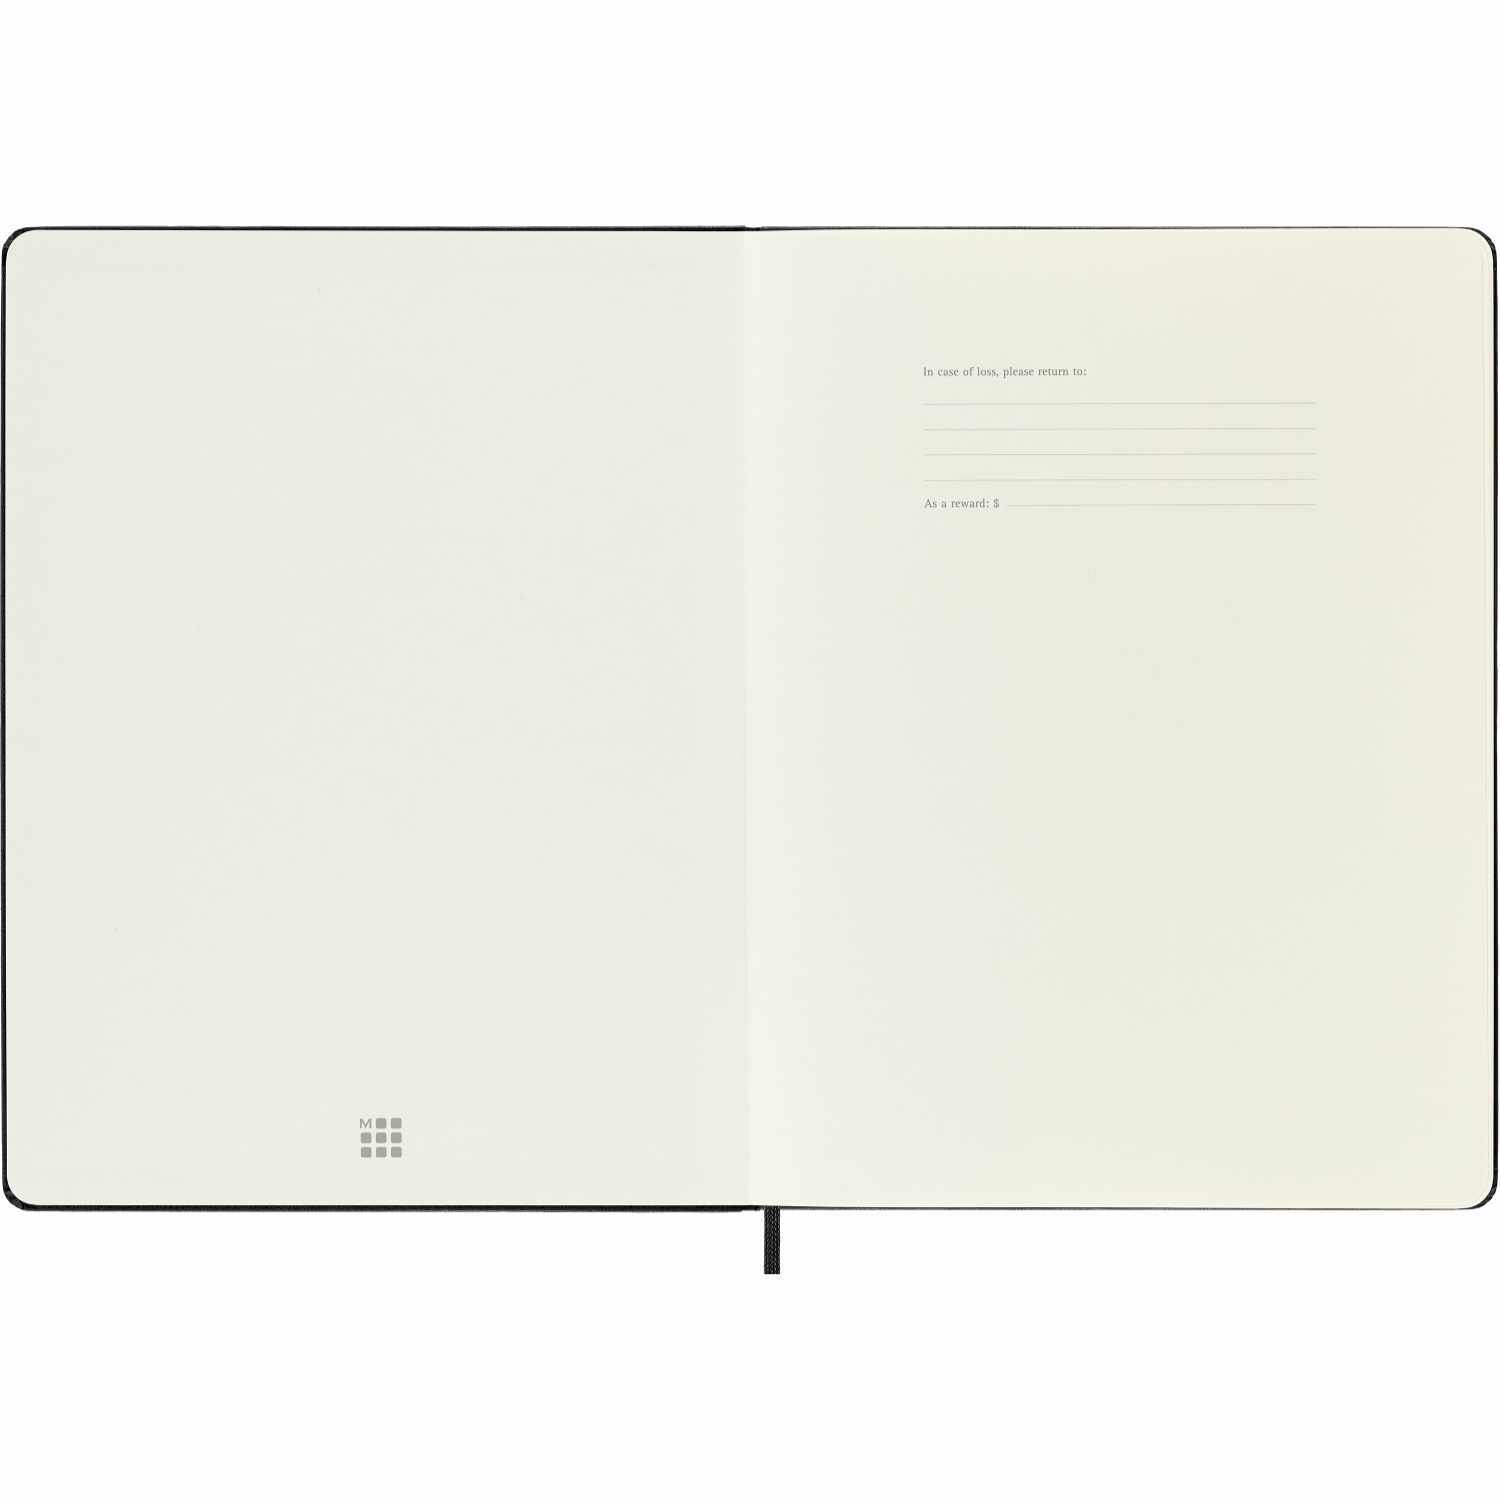 Notizbuch XL blanko Hard Cover